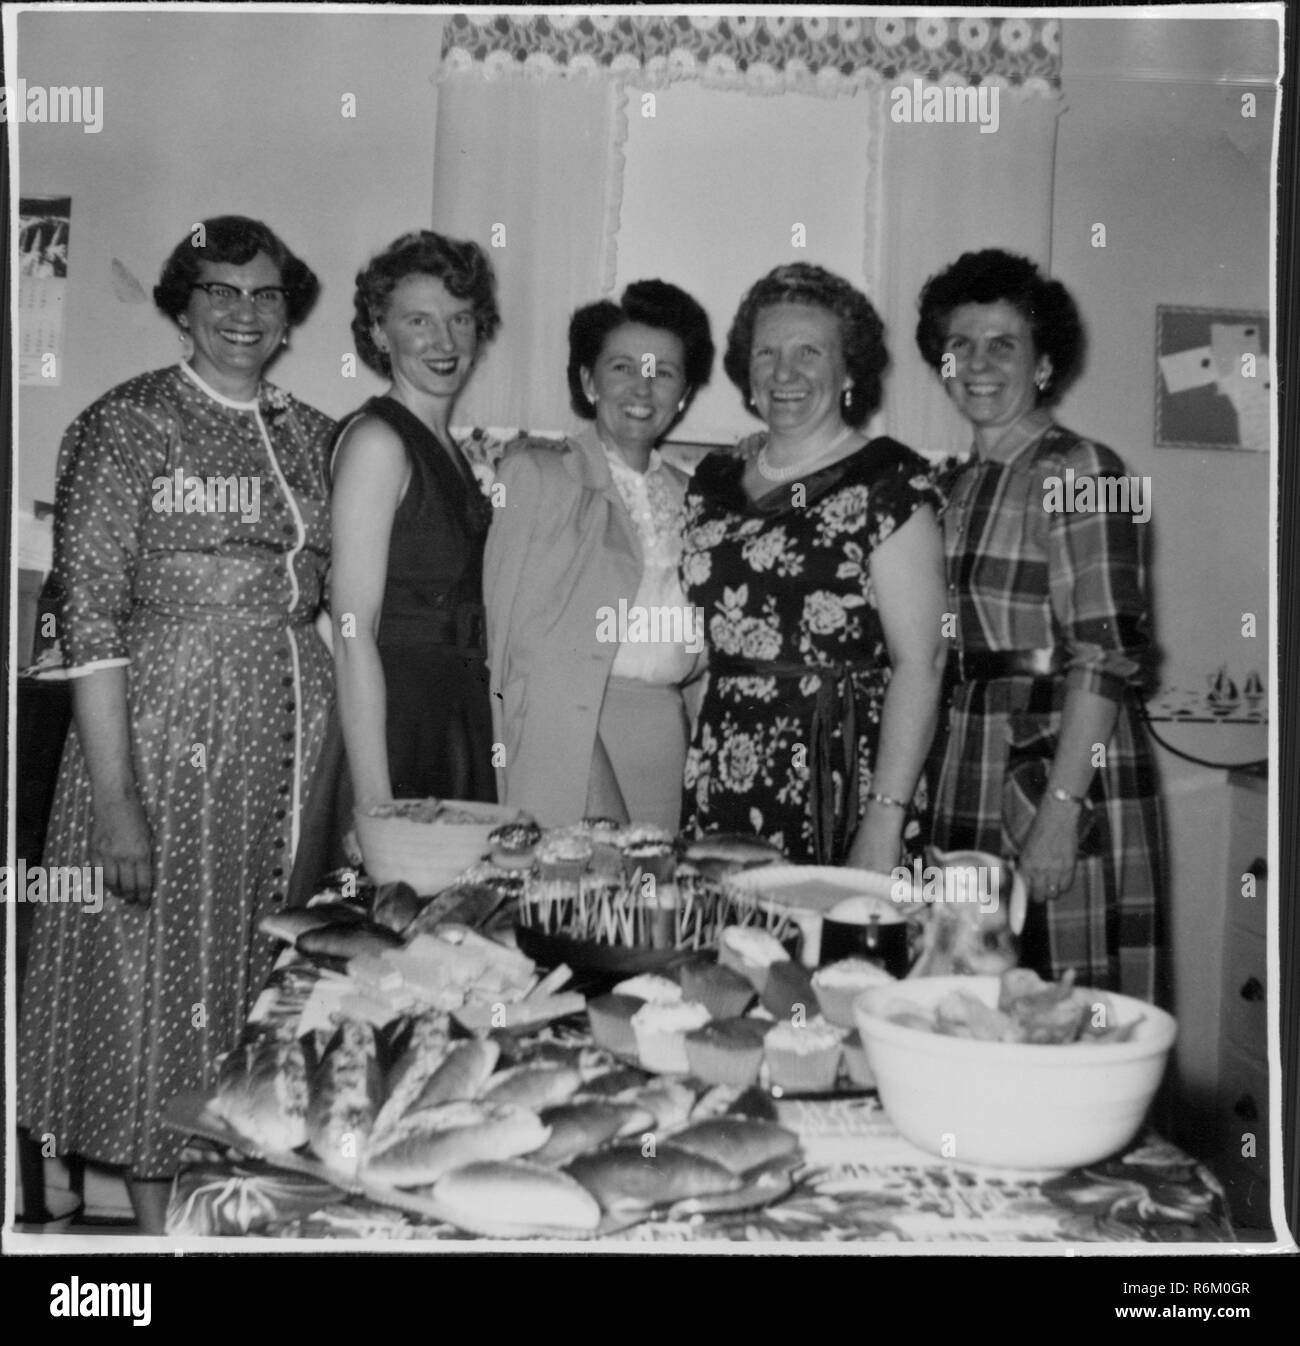 Un gruppo delle casalinghe di età variabili, indossando abiti, in piedi in una casa suburbana e in posa per una fotografia con un tavolo ricoperto nella tradizionale festa alimenti, incluso scheggiature, panini e casseruole dip, 21 aprile 1954. () Foto Stock